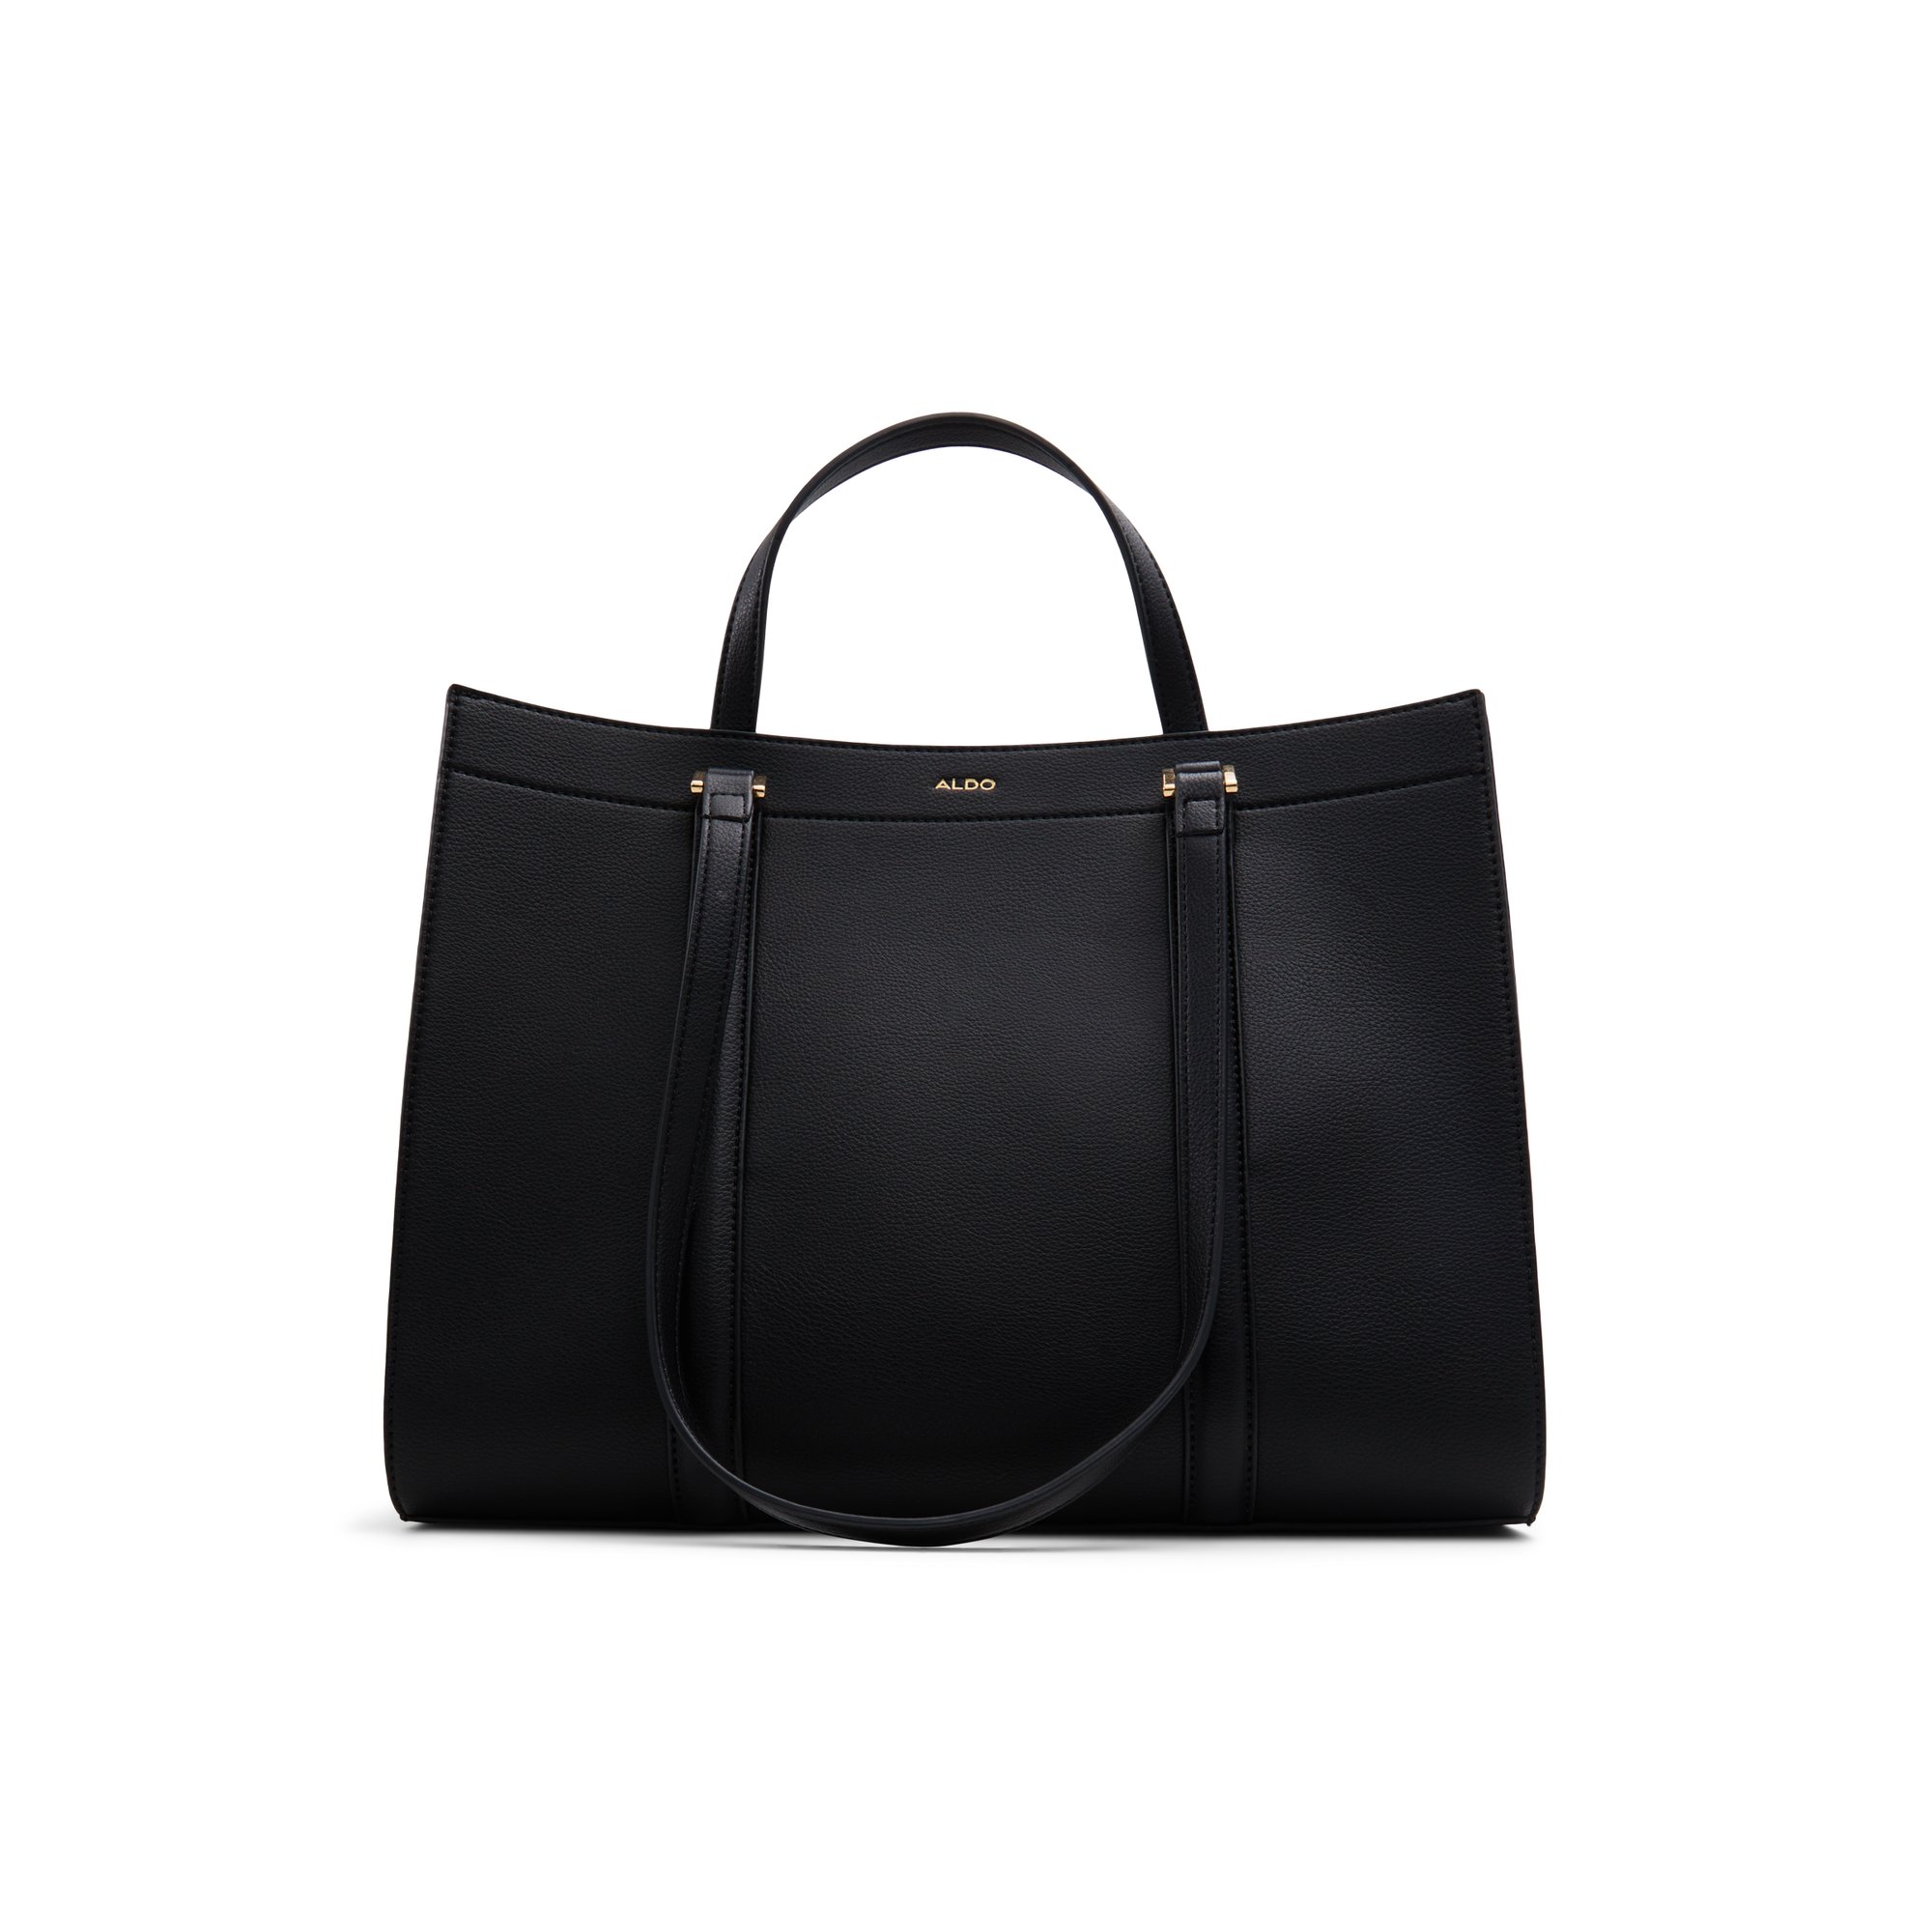 ALDO Ninetoninee - Women's Handbags Totes - Black